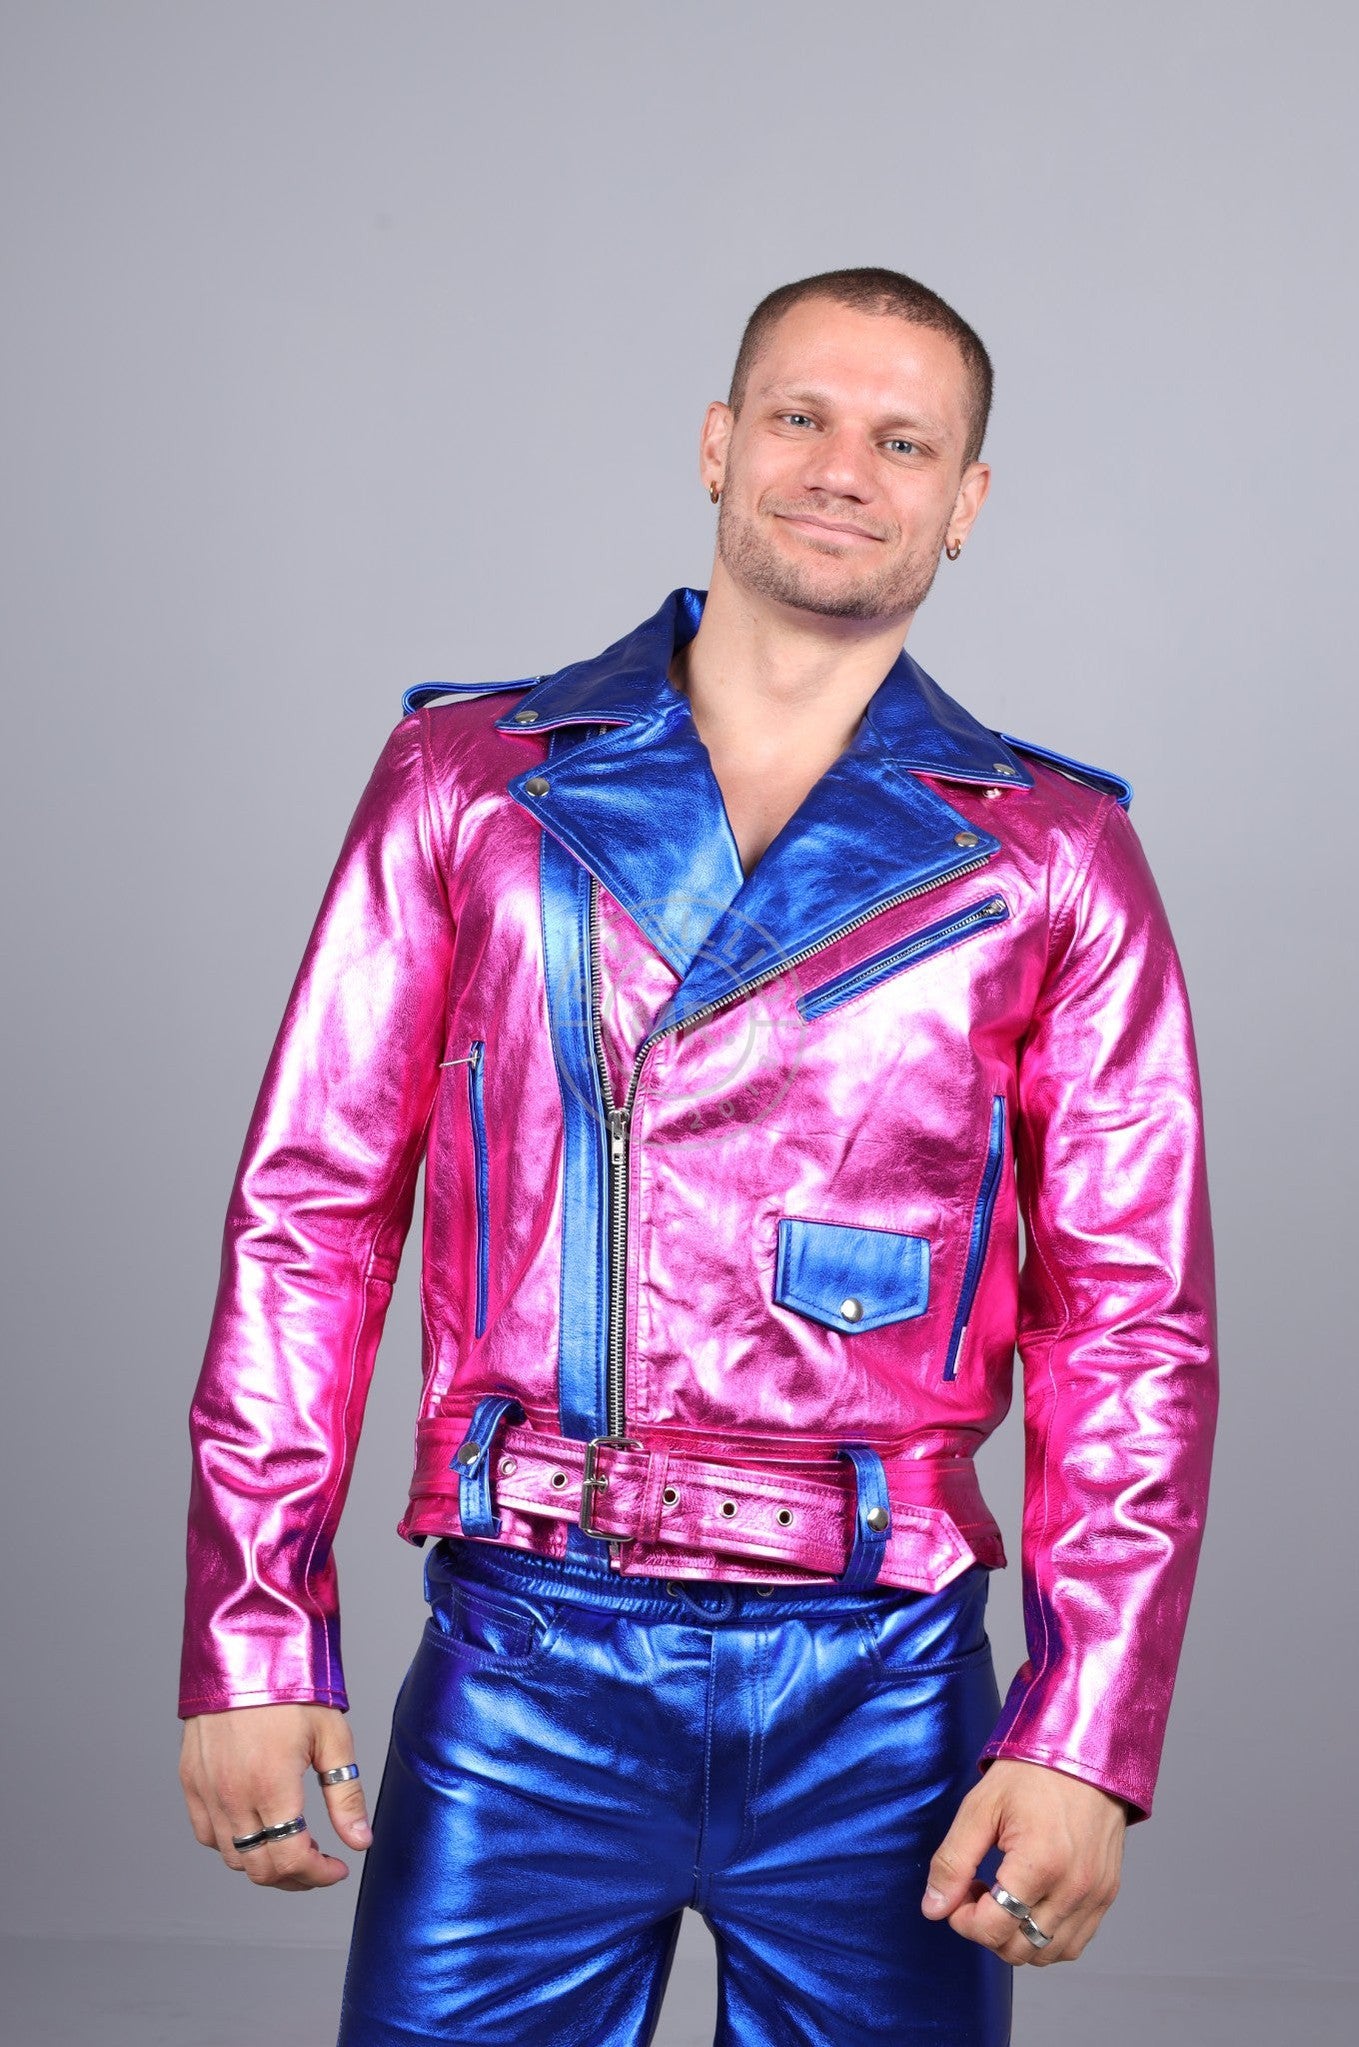 Metallic Leather Biker Jacket - Pink/Blue at MR. Riegillio